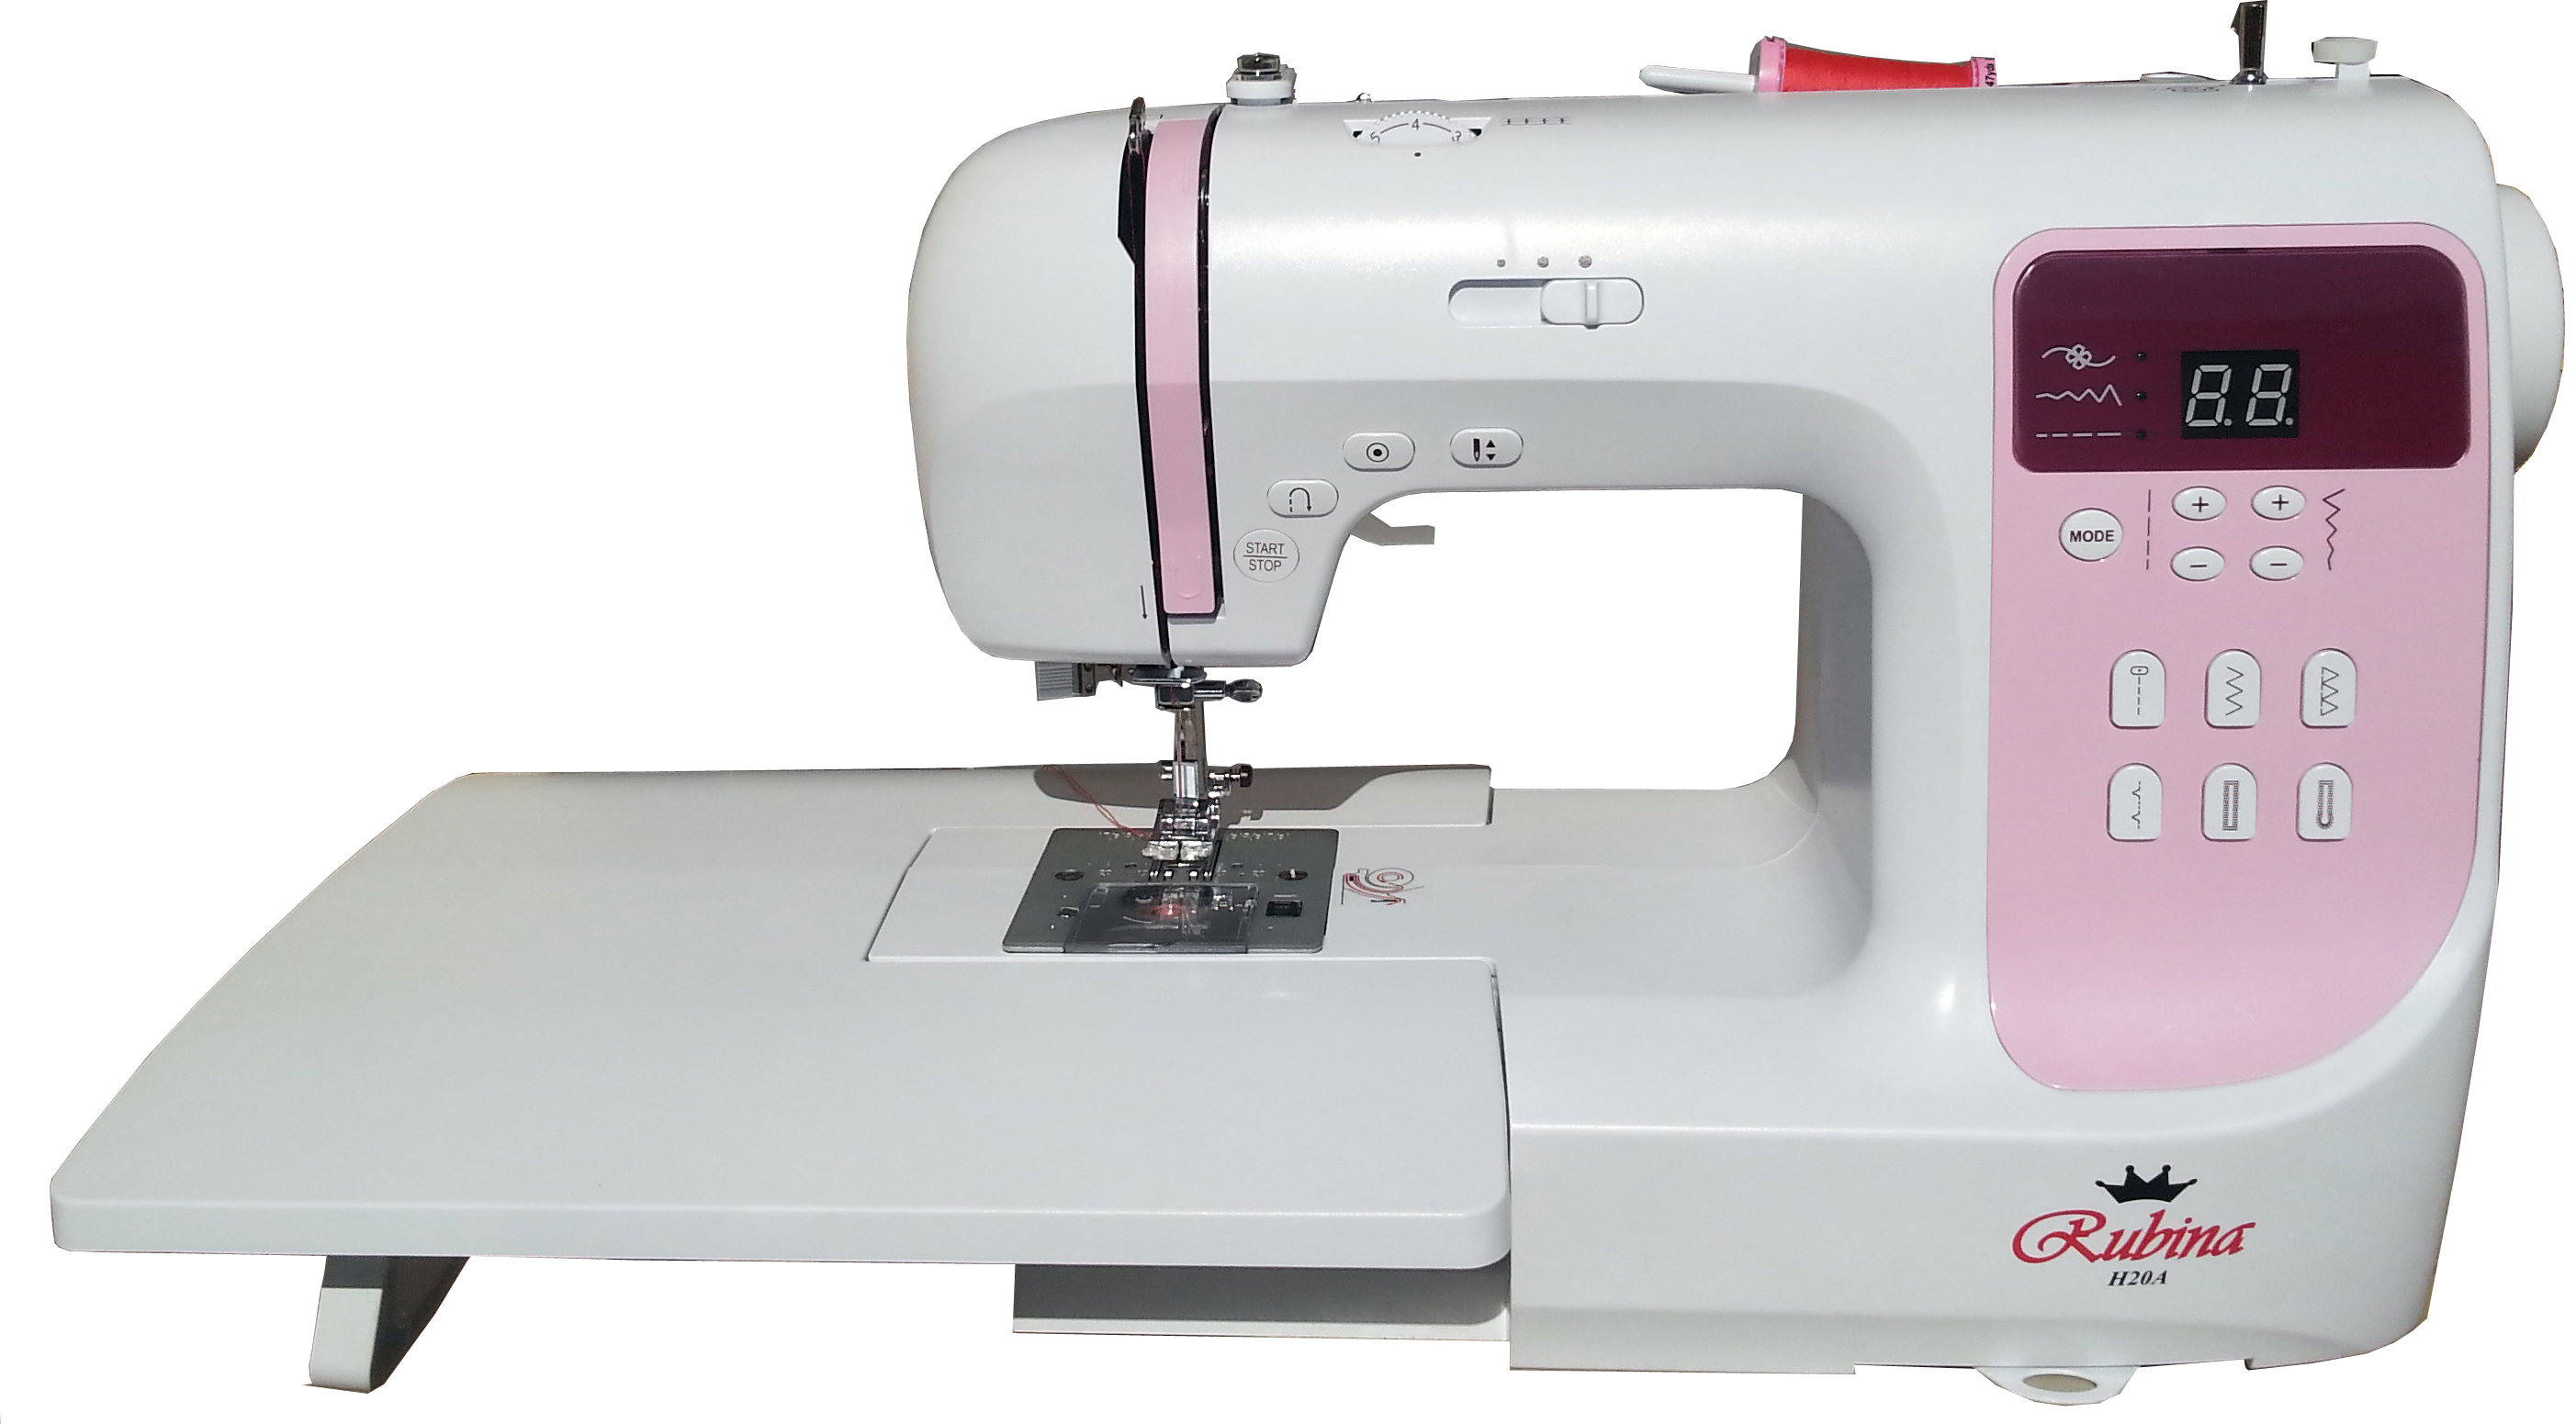 Kompiuterizuota siuvimo mašina Rubina H20A kaina | pigu.lt